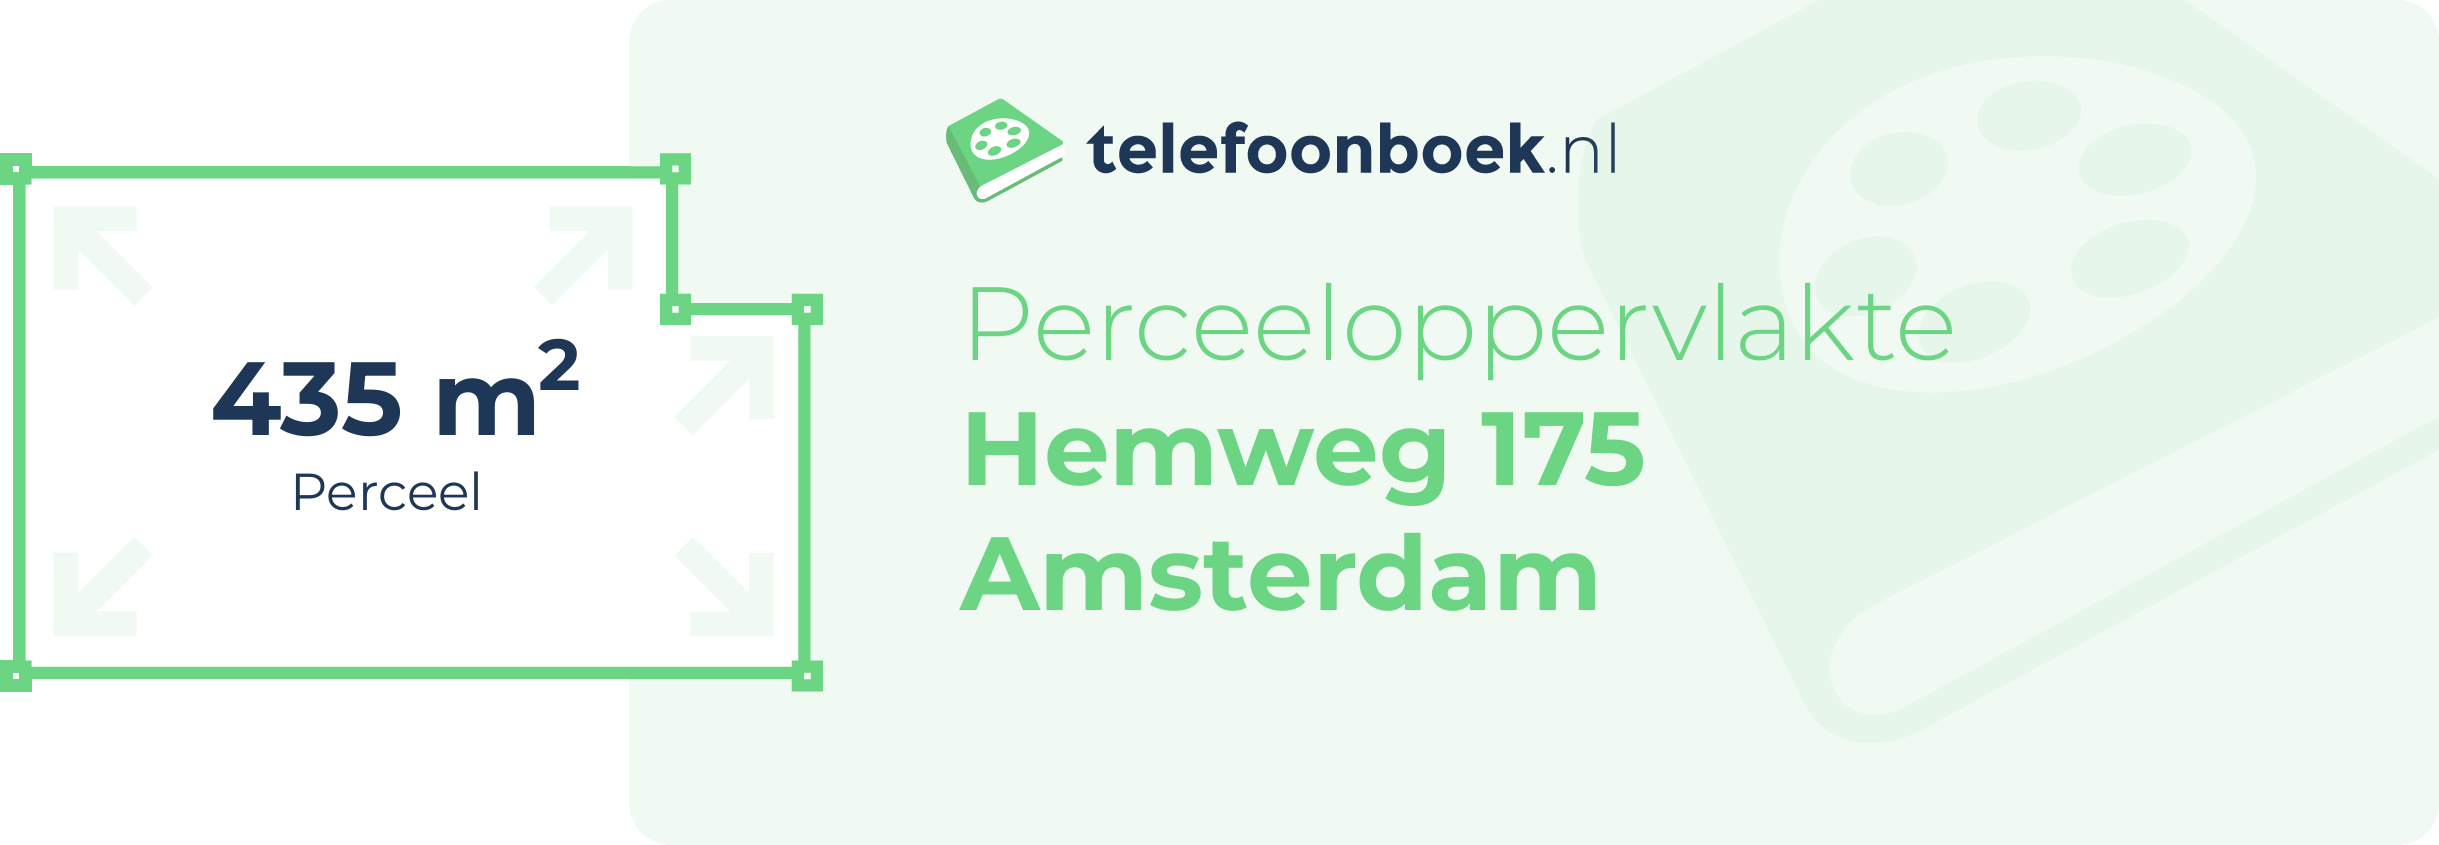 Perceeloppervlakte Hemweg 175 Amsterdam